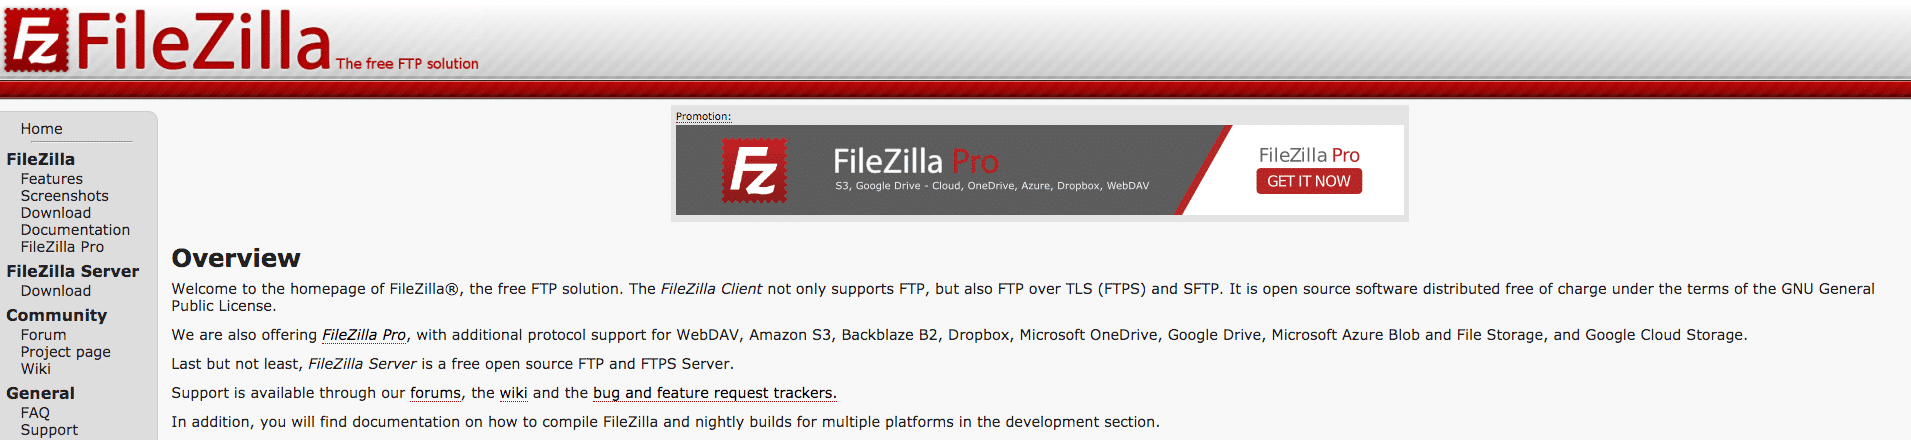 La página de inicio de FileZilla